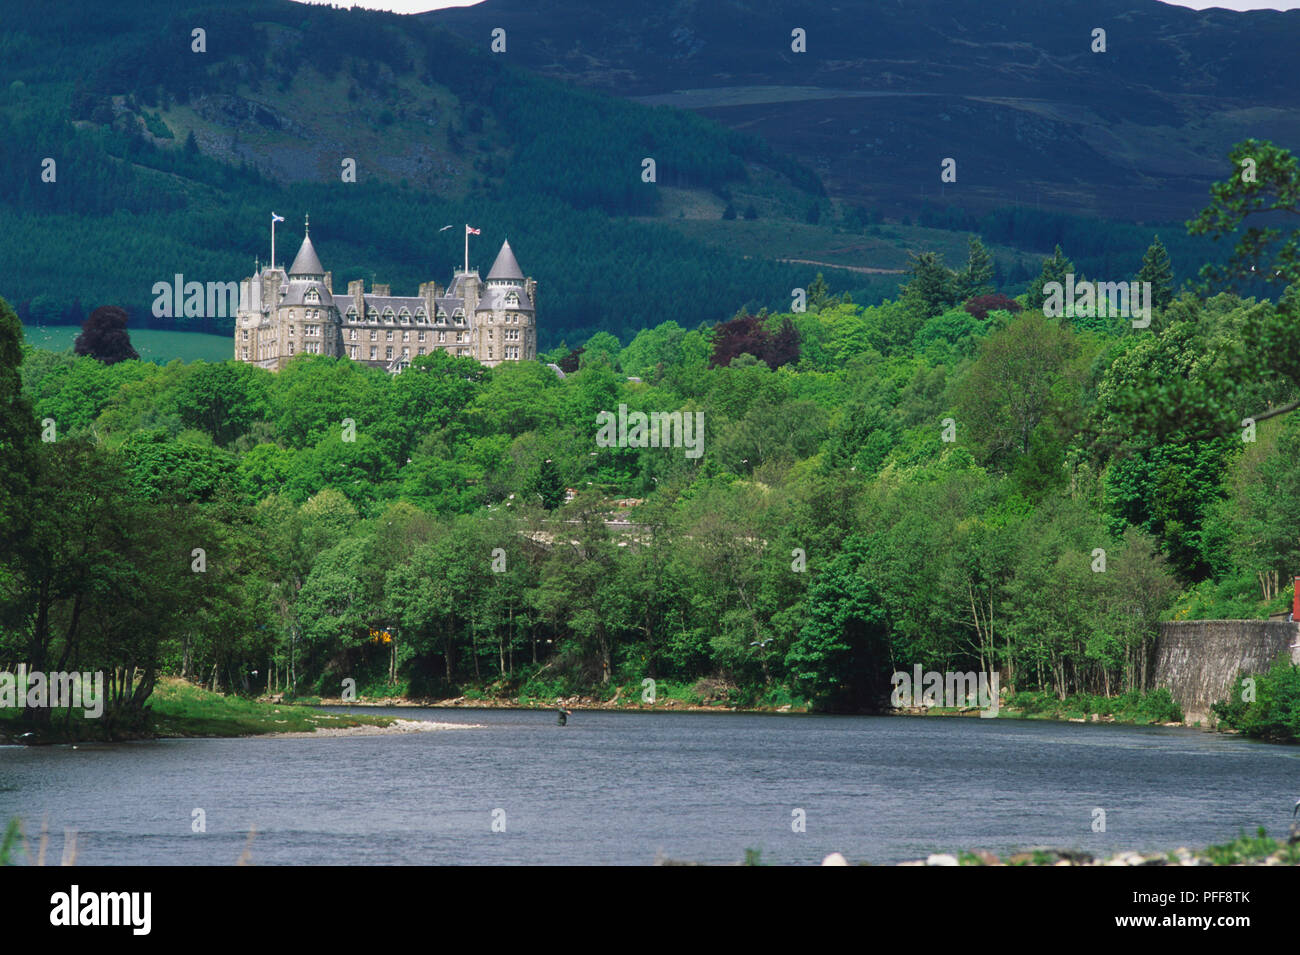 Großbritannien, Schottland, Perthshire, Pitlochry, Atholl Palace Hotel, Blick auf See und Wald Wald mit Burg in der Ferne. Stockfoto